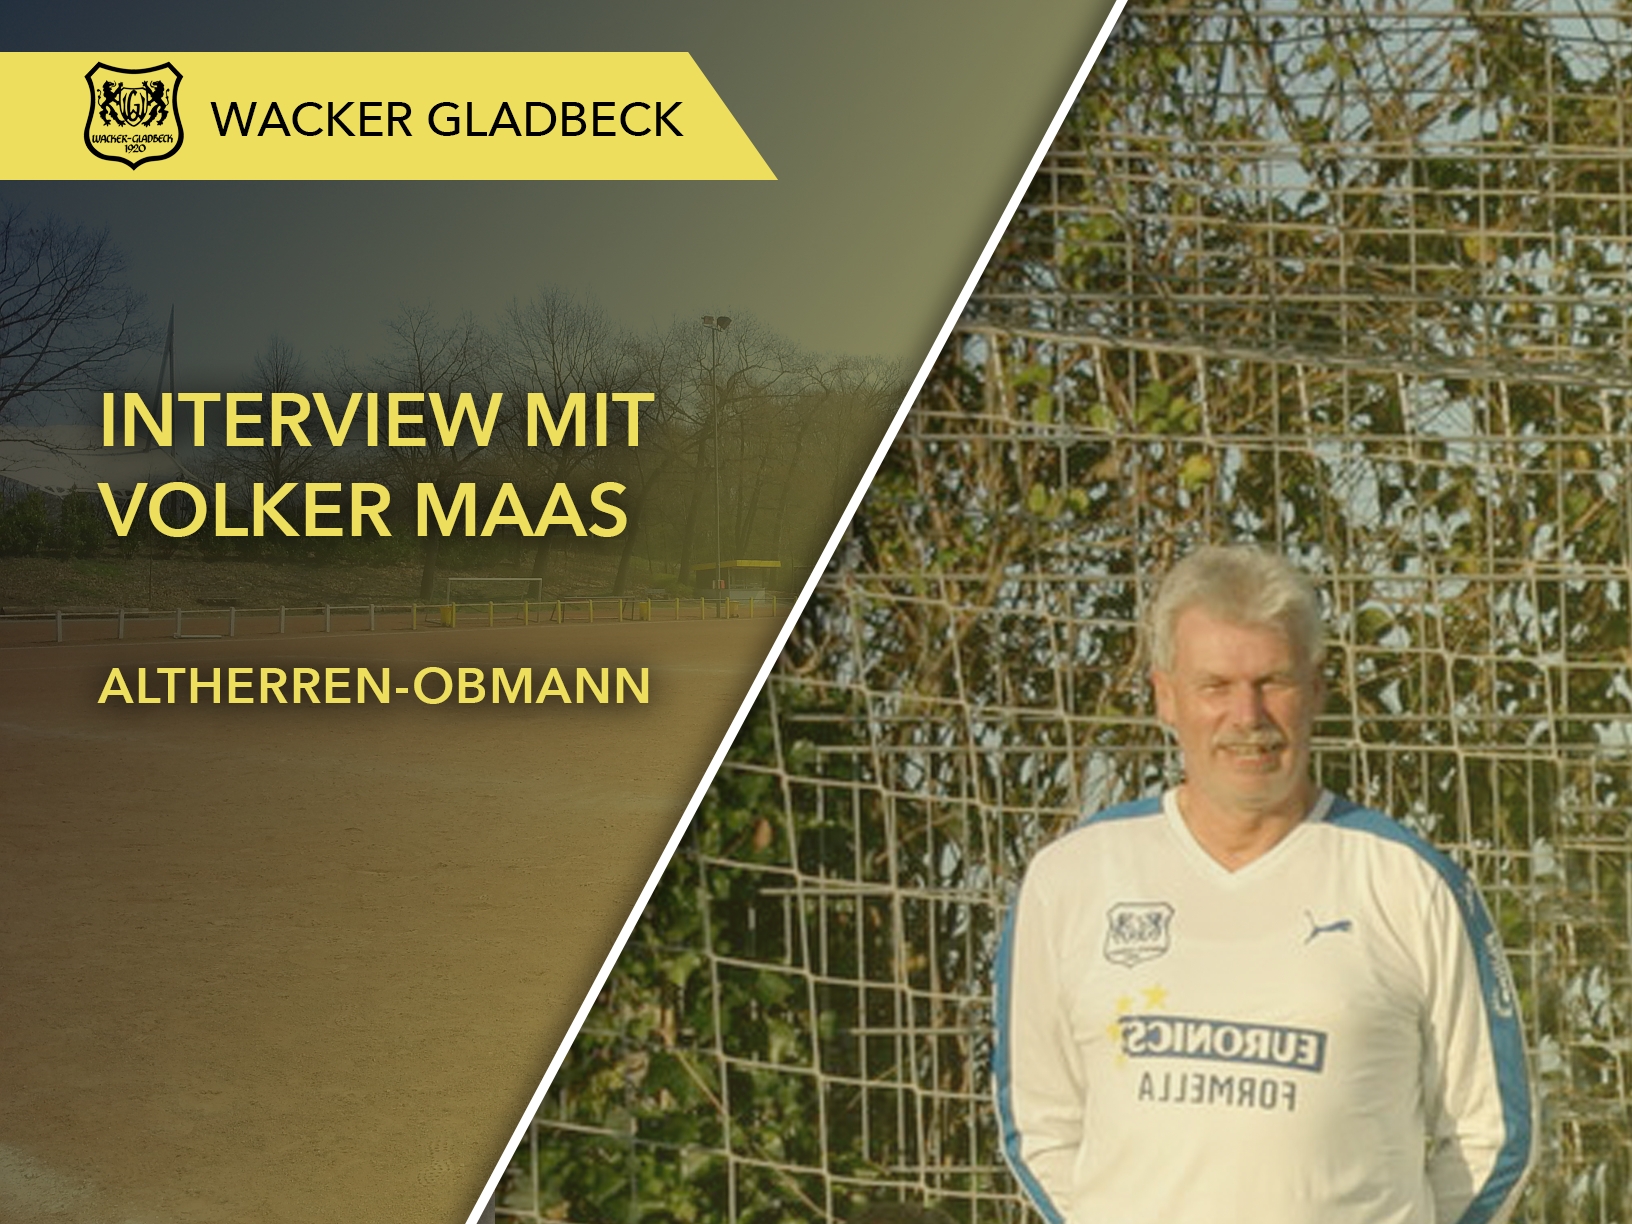 Interview mit Altherren-Obmann Volker Maas - Wacker Gladbeck